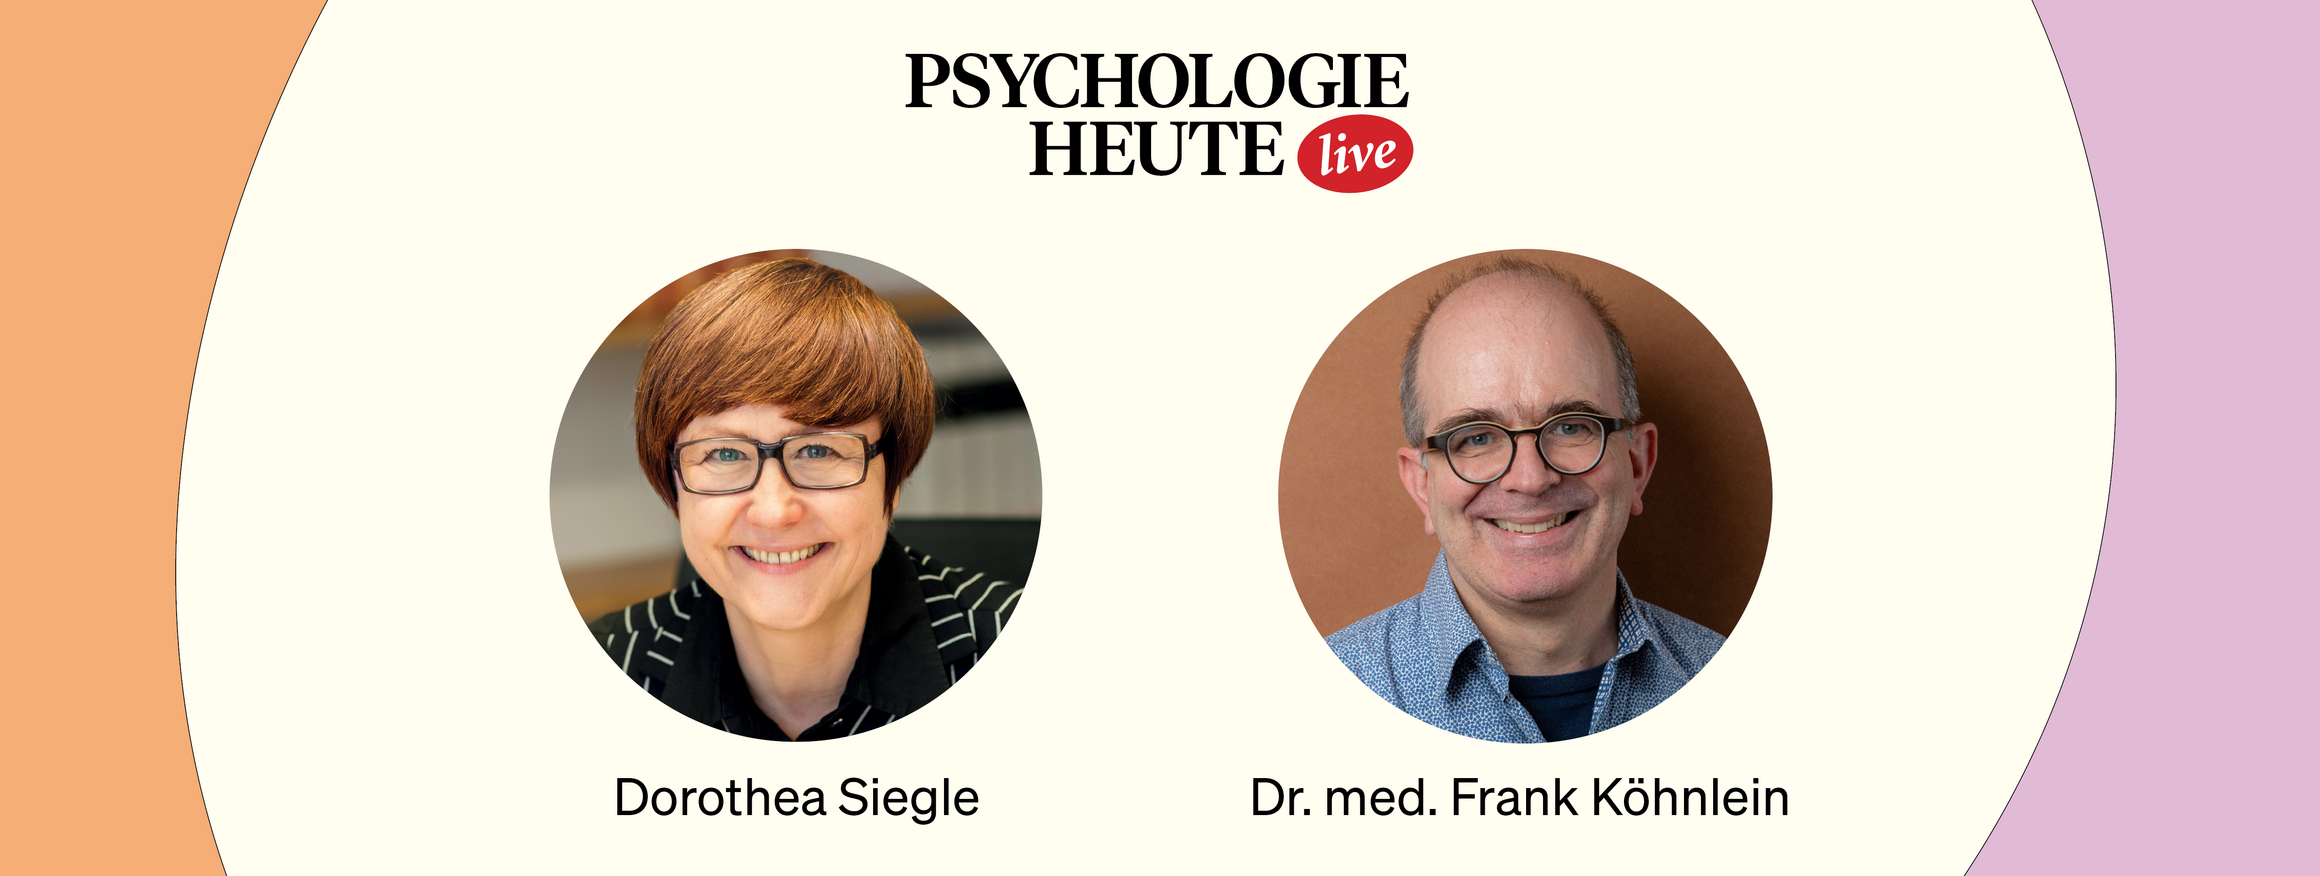 Die Collage zeigt Chefredakteurin Dorothea Siegle sowie den Facharzt für Kinder- und Jugendpsychiatrie und -psychotherapie, Frank Köhnlein.